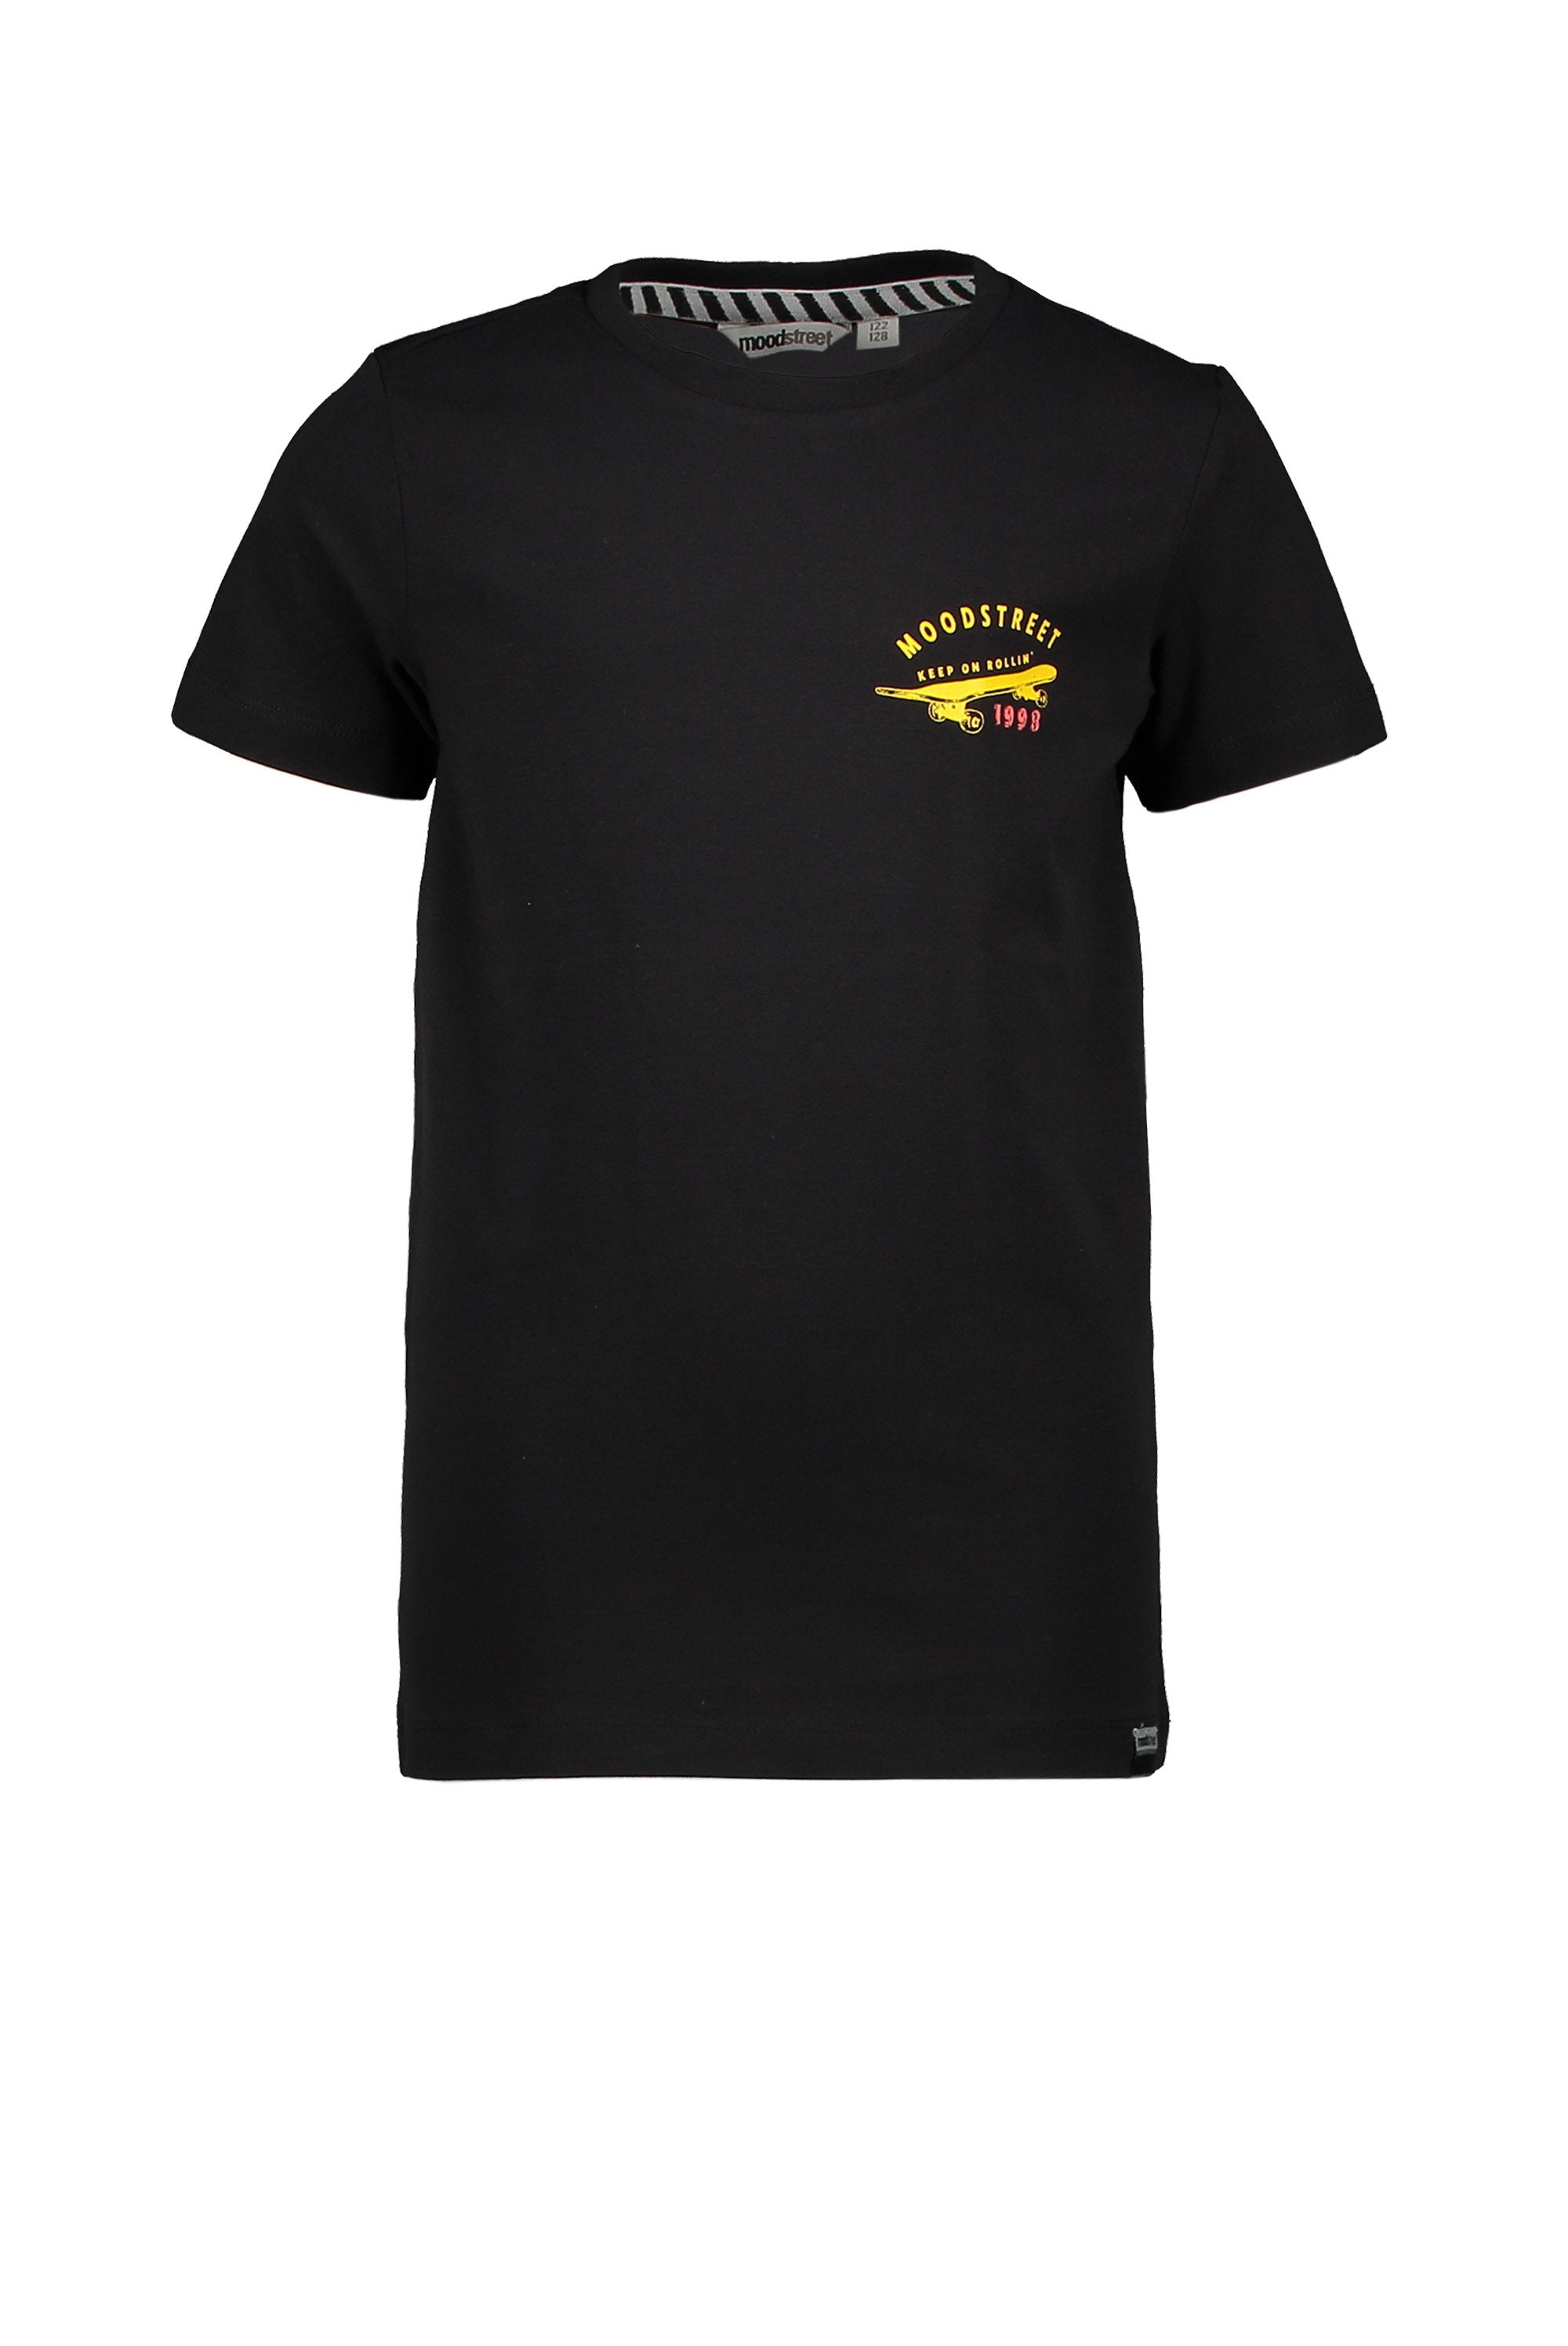 Jongens T-Shirt Chest&Back Print van Moodstreet in de kleur Black in maat 122/128.